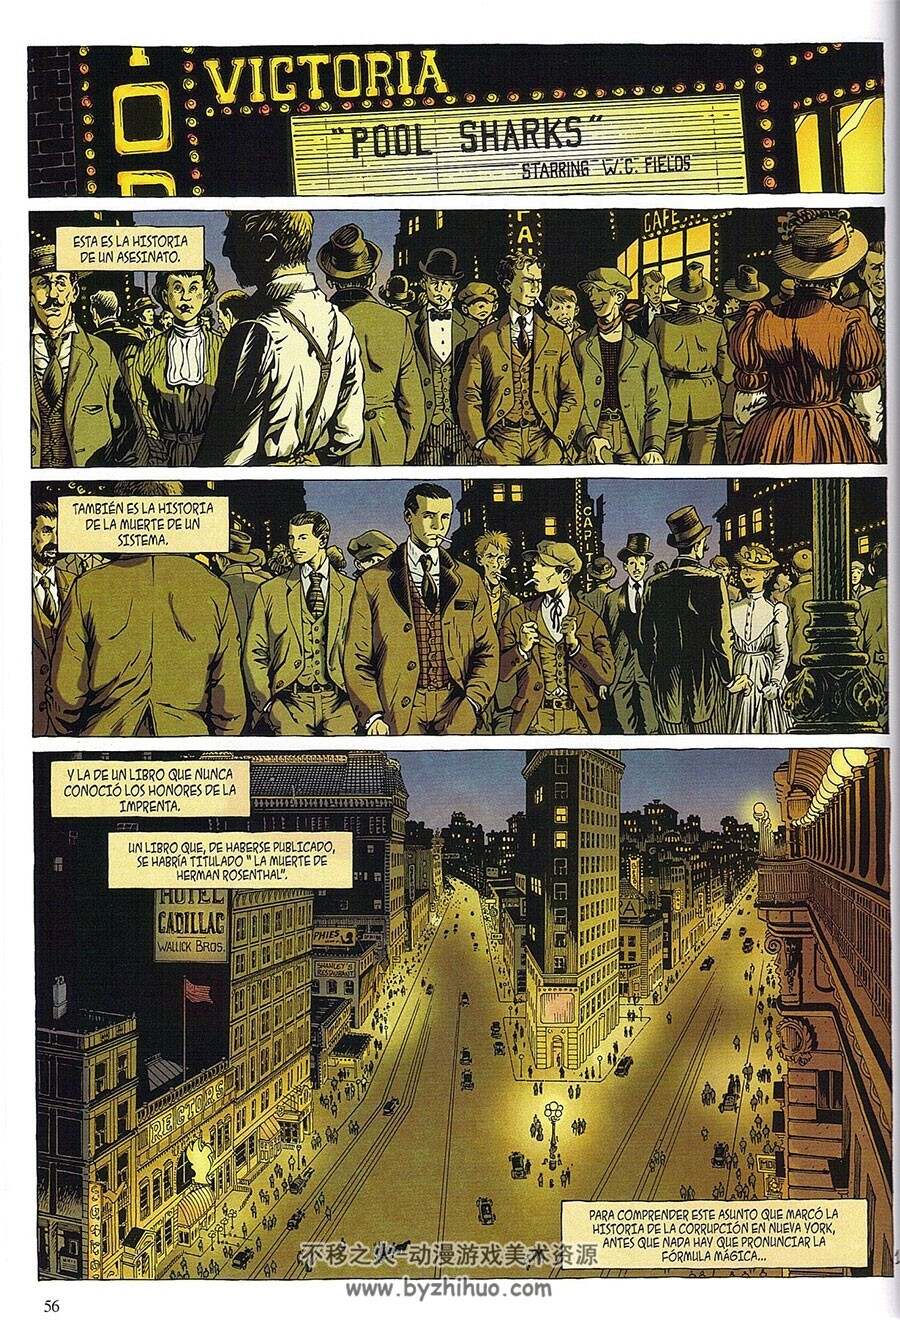 La Cosa Nostra 1-6册 David Chauvel - Erwan Le Saec 20世纪美国背景漫画